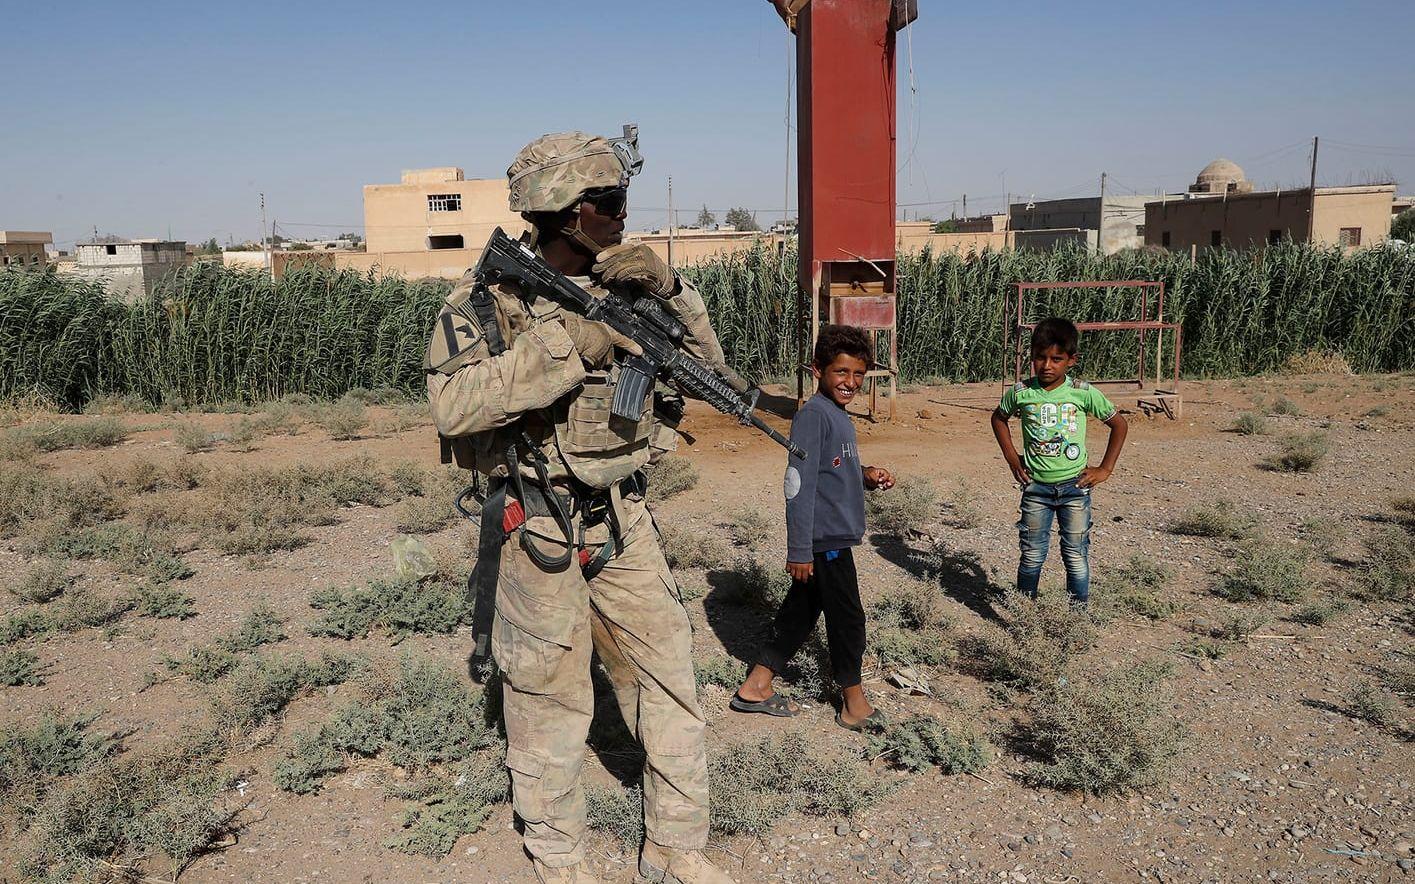 En amerikansk soldat och några syriska barn står vid en väg nära al-Raqqa. USA har upp till 1000 militärer i Syrien, huvudsakligen där för att träna och utbilda trupper till att slåss mot IS.FOTO: Hussein Malla/AP
